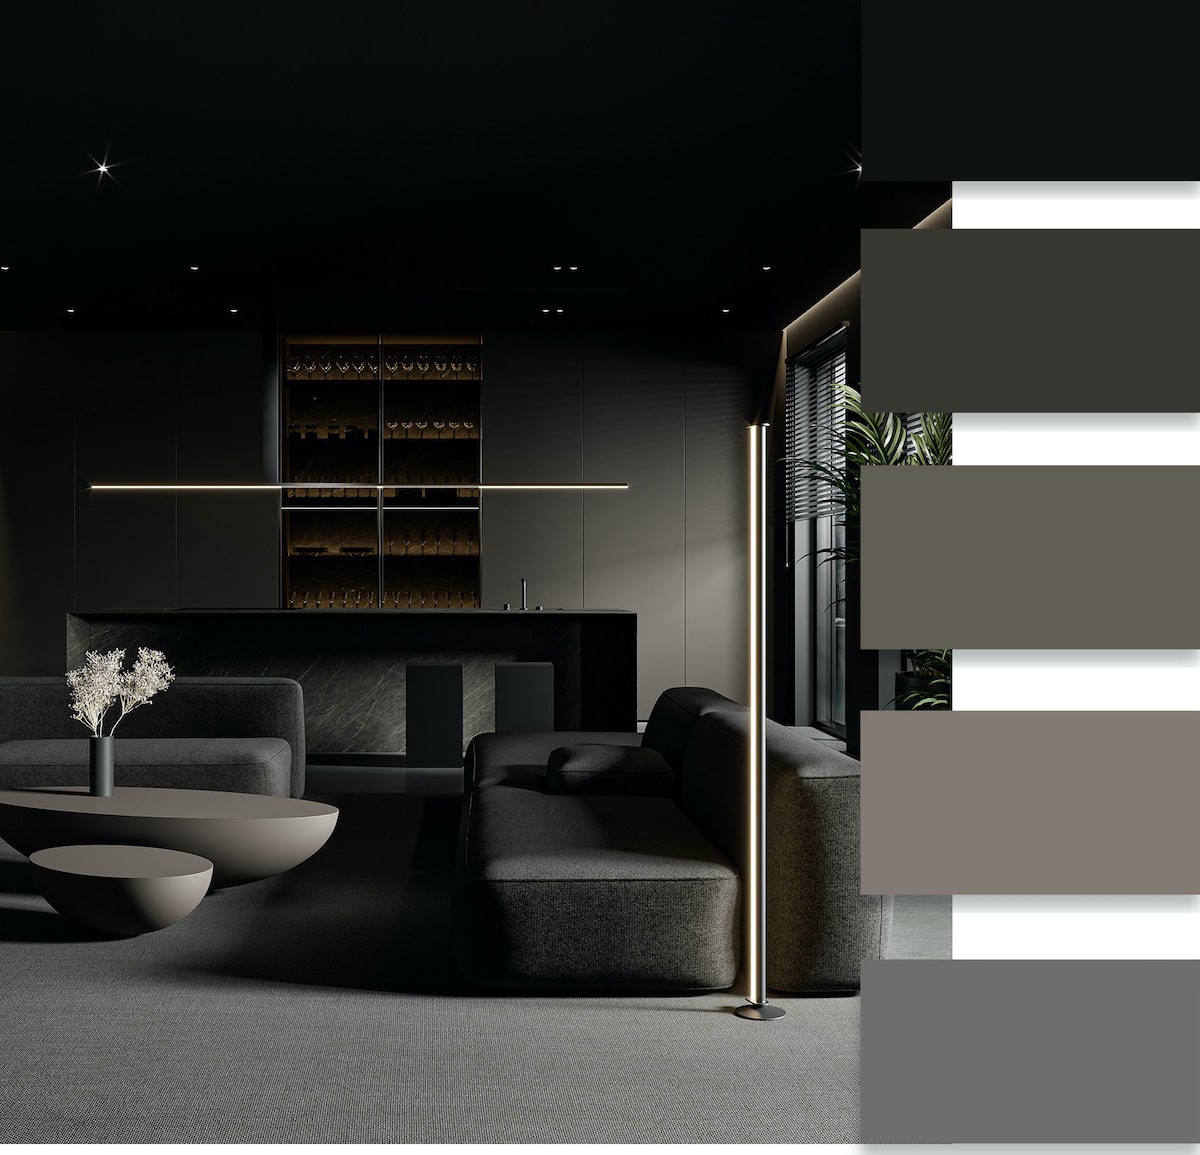 Nền đen trong nội thất có thể làm nền cho hầu hết các màu, hoặc điểm nhấn cho không gian sang trọng. 
Tuy nhiên, bạn hãy lưu ý khi sử dụng màu đen trong căn hộ có diện tích nhỏ nhé